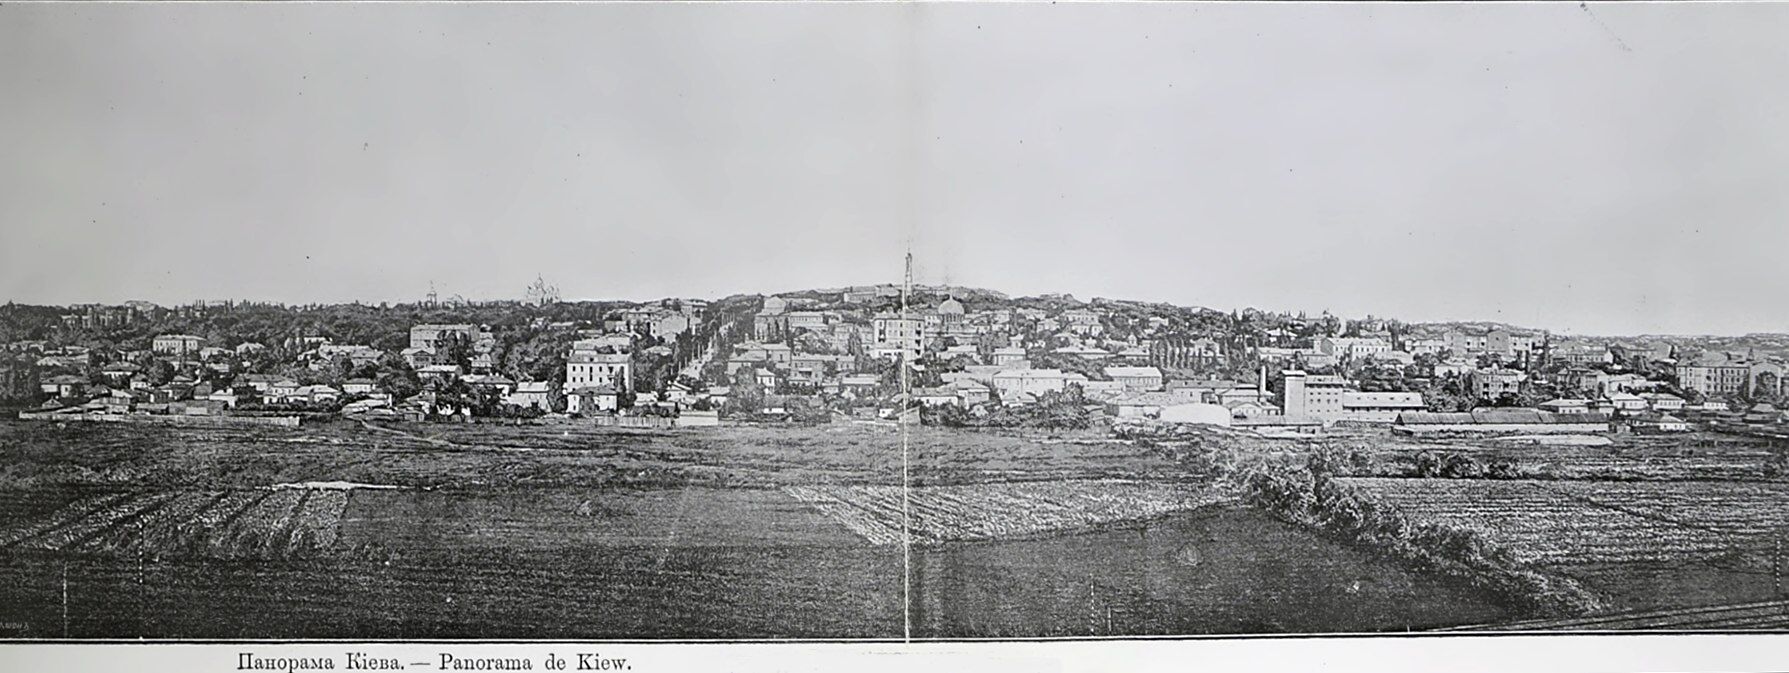 Tego jeszcze nie widzieliście: sieć pokazała wyjątkową panoramę Kijowa w 1903 roku. Zdjęcie